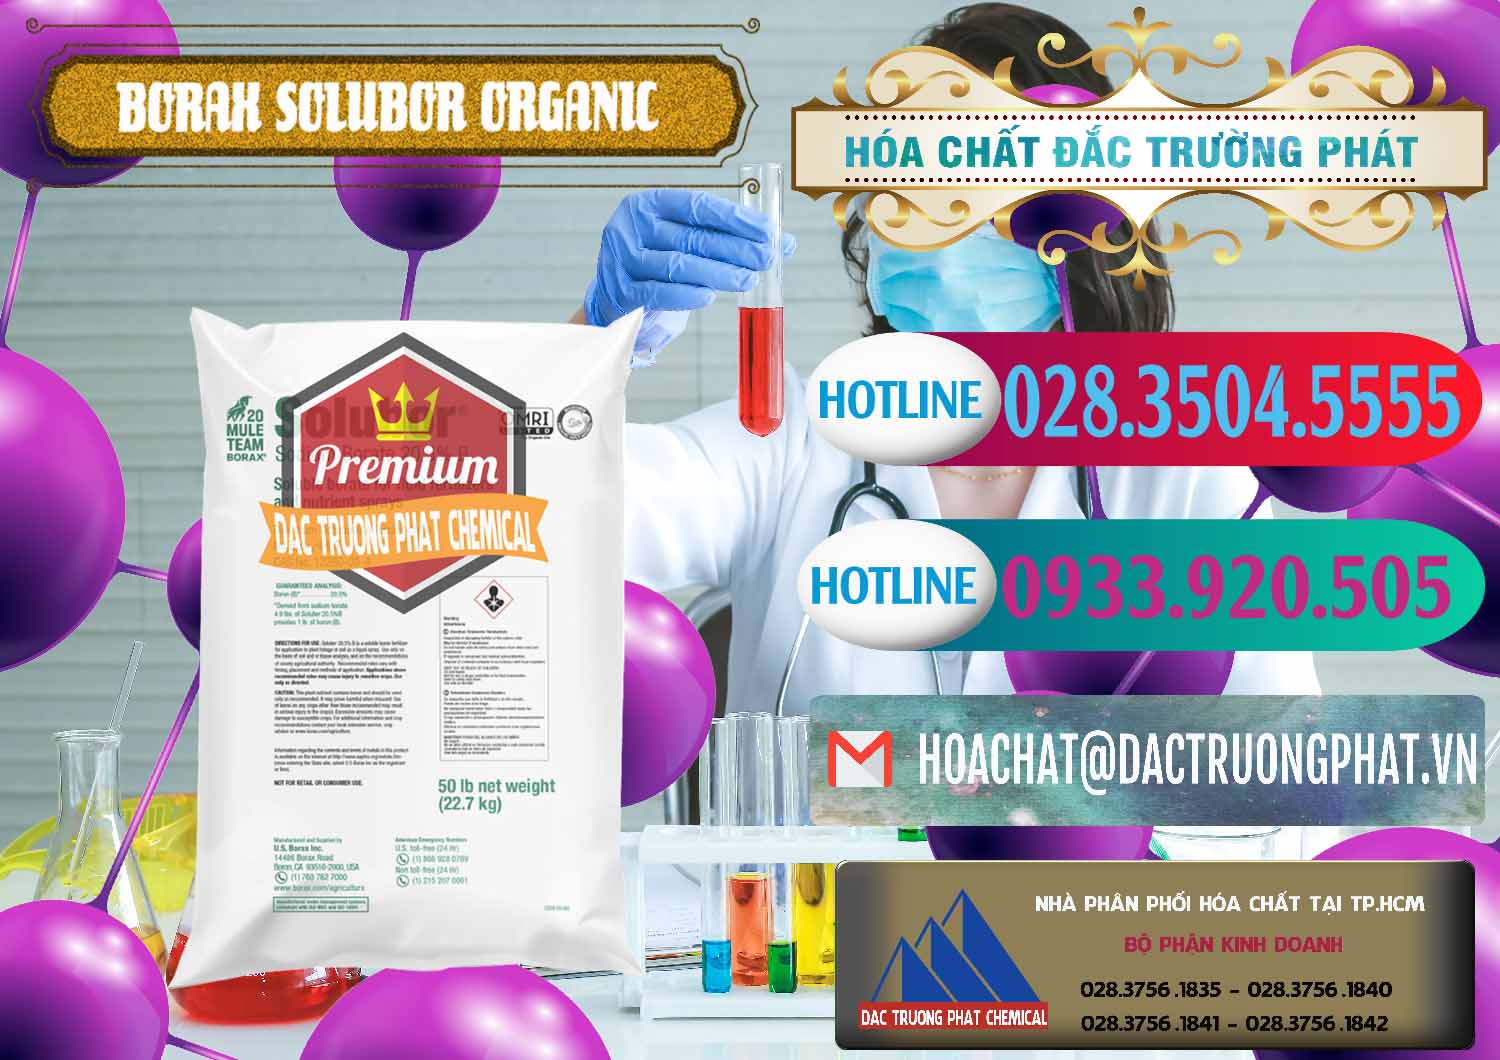 Nơi cung ứng và bán Borax Hữu Cơ Solubor Organic Mỹ Usa - Mule 20 Team - 0458 - Cty cung ứng ( phân phối ) hóa chất tại TP.HCM - truongphat.vn